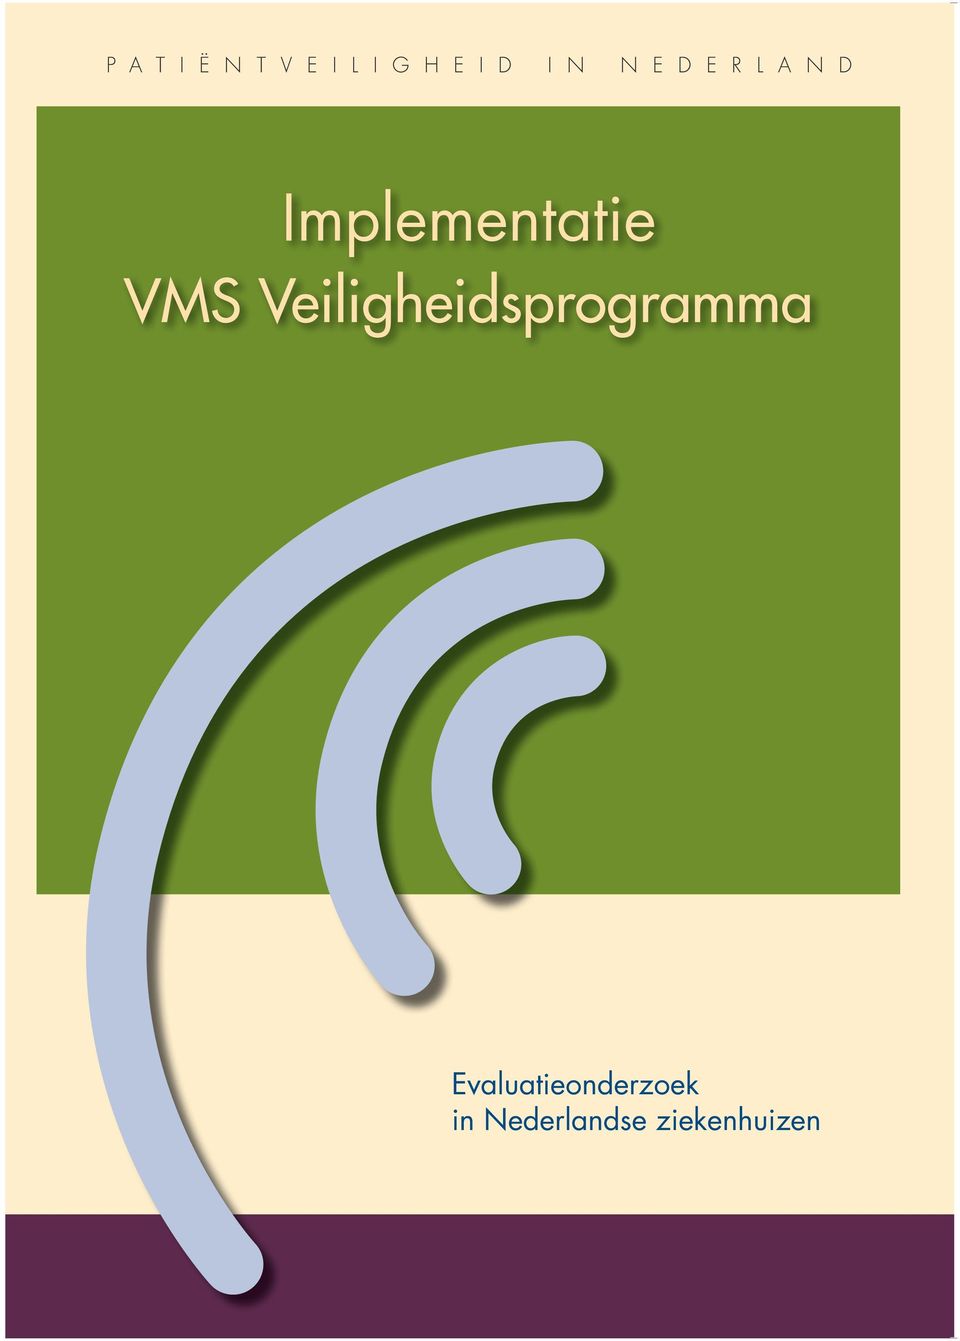 VMS Veiligheidsprogramma